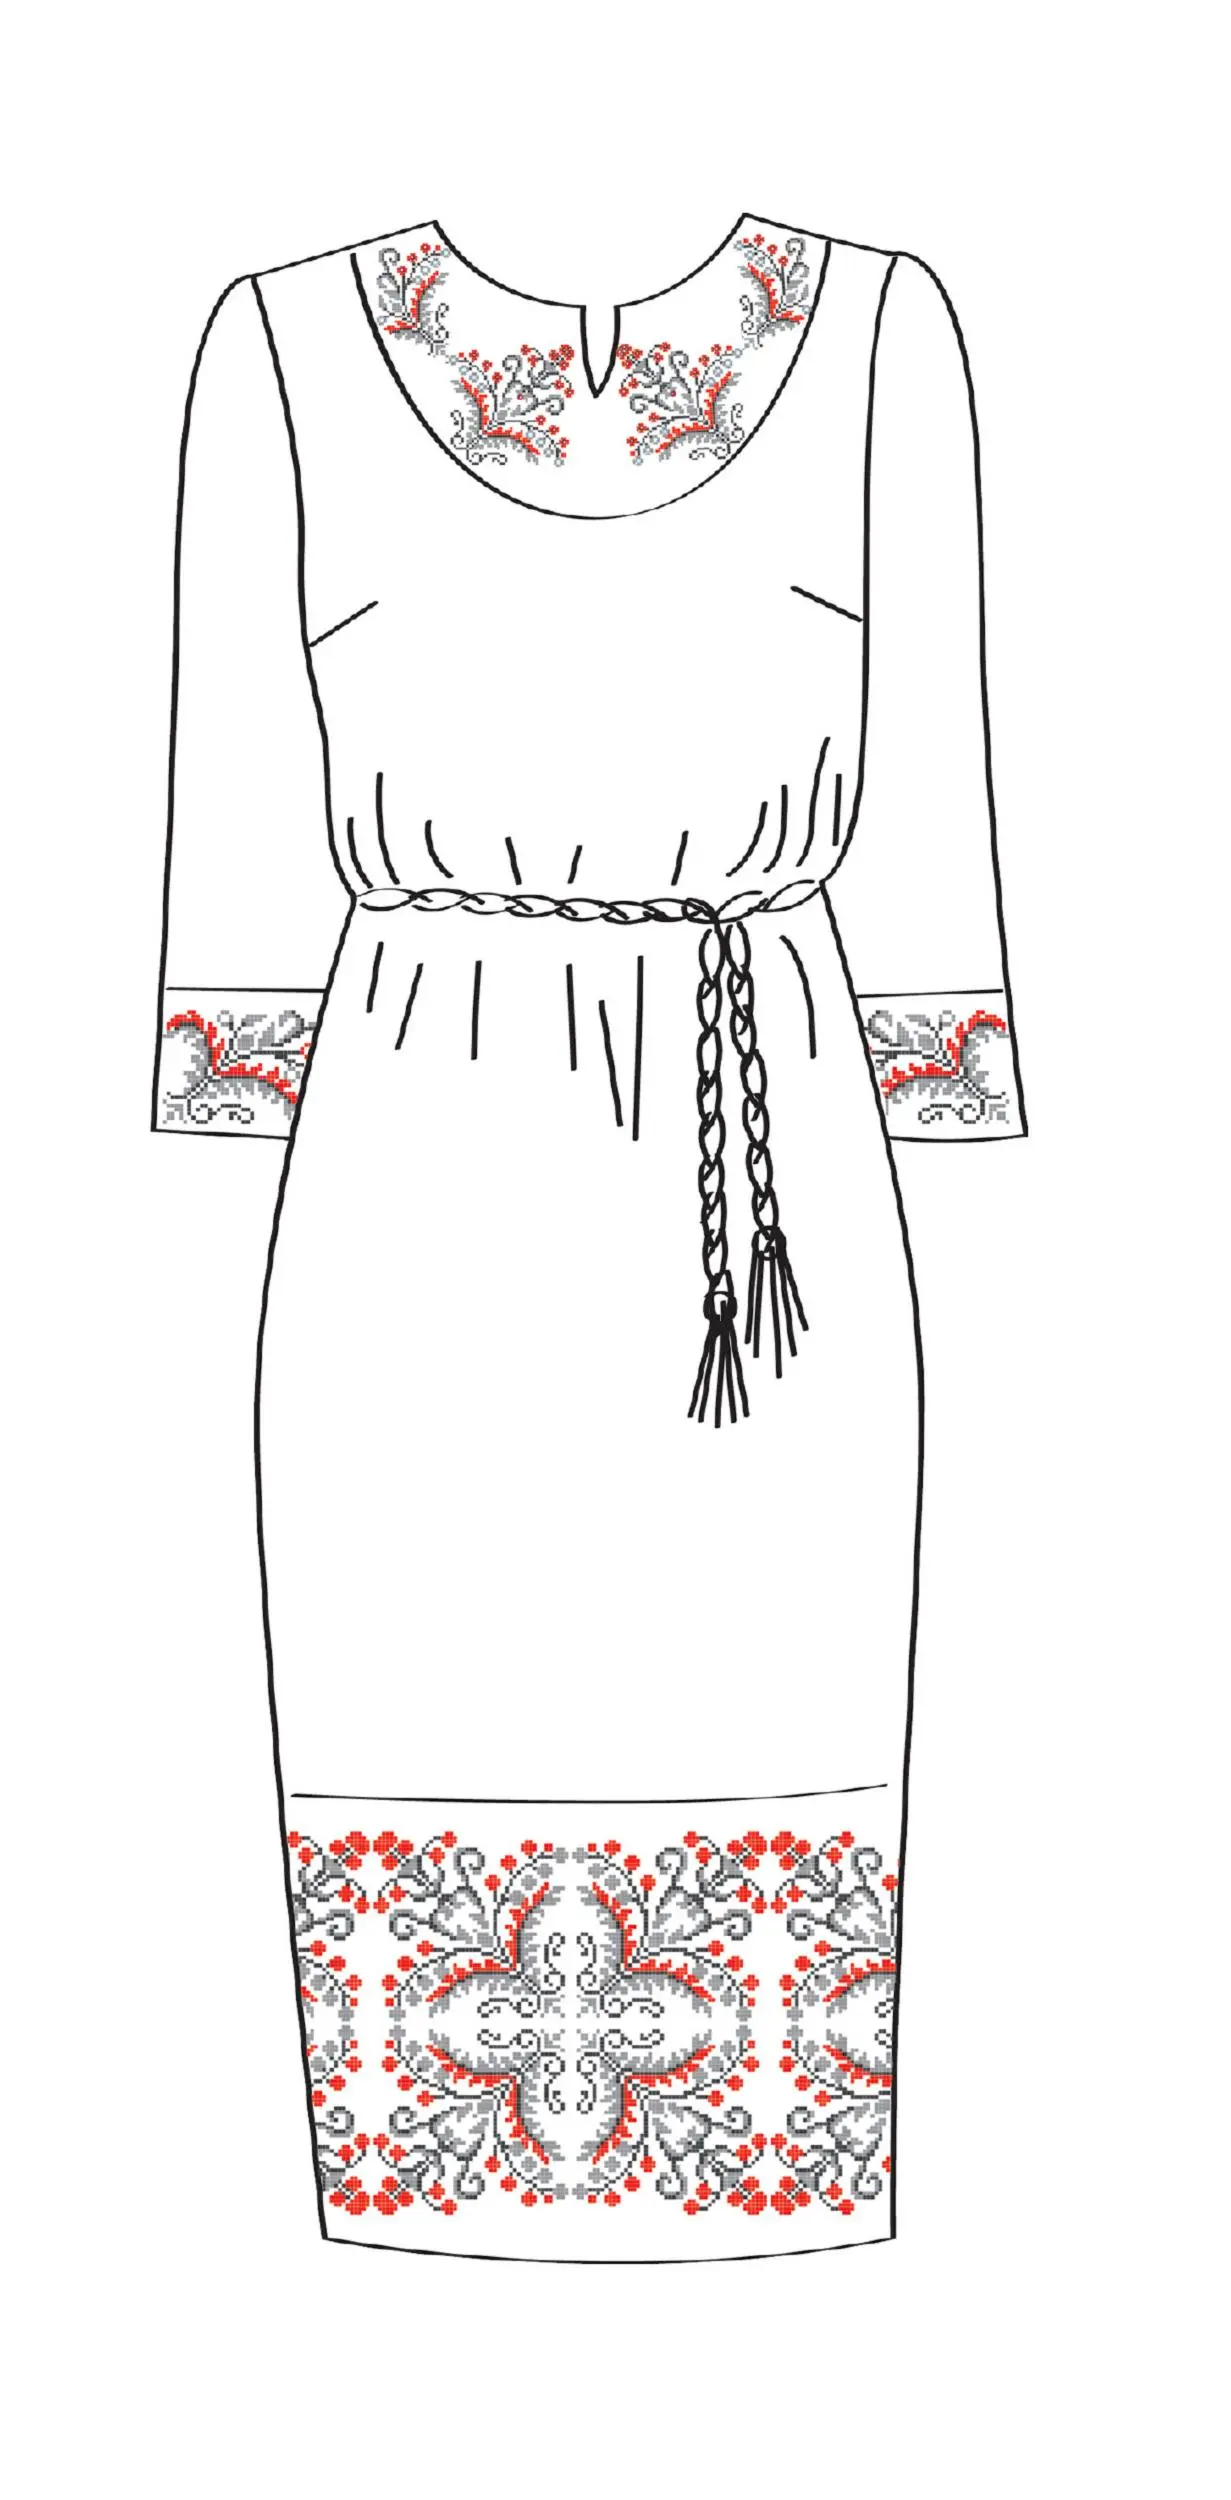 820-14/09 Плаття жіноче з поясом, біле, розмір 48